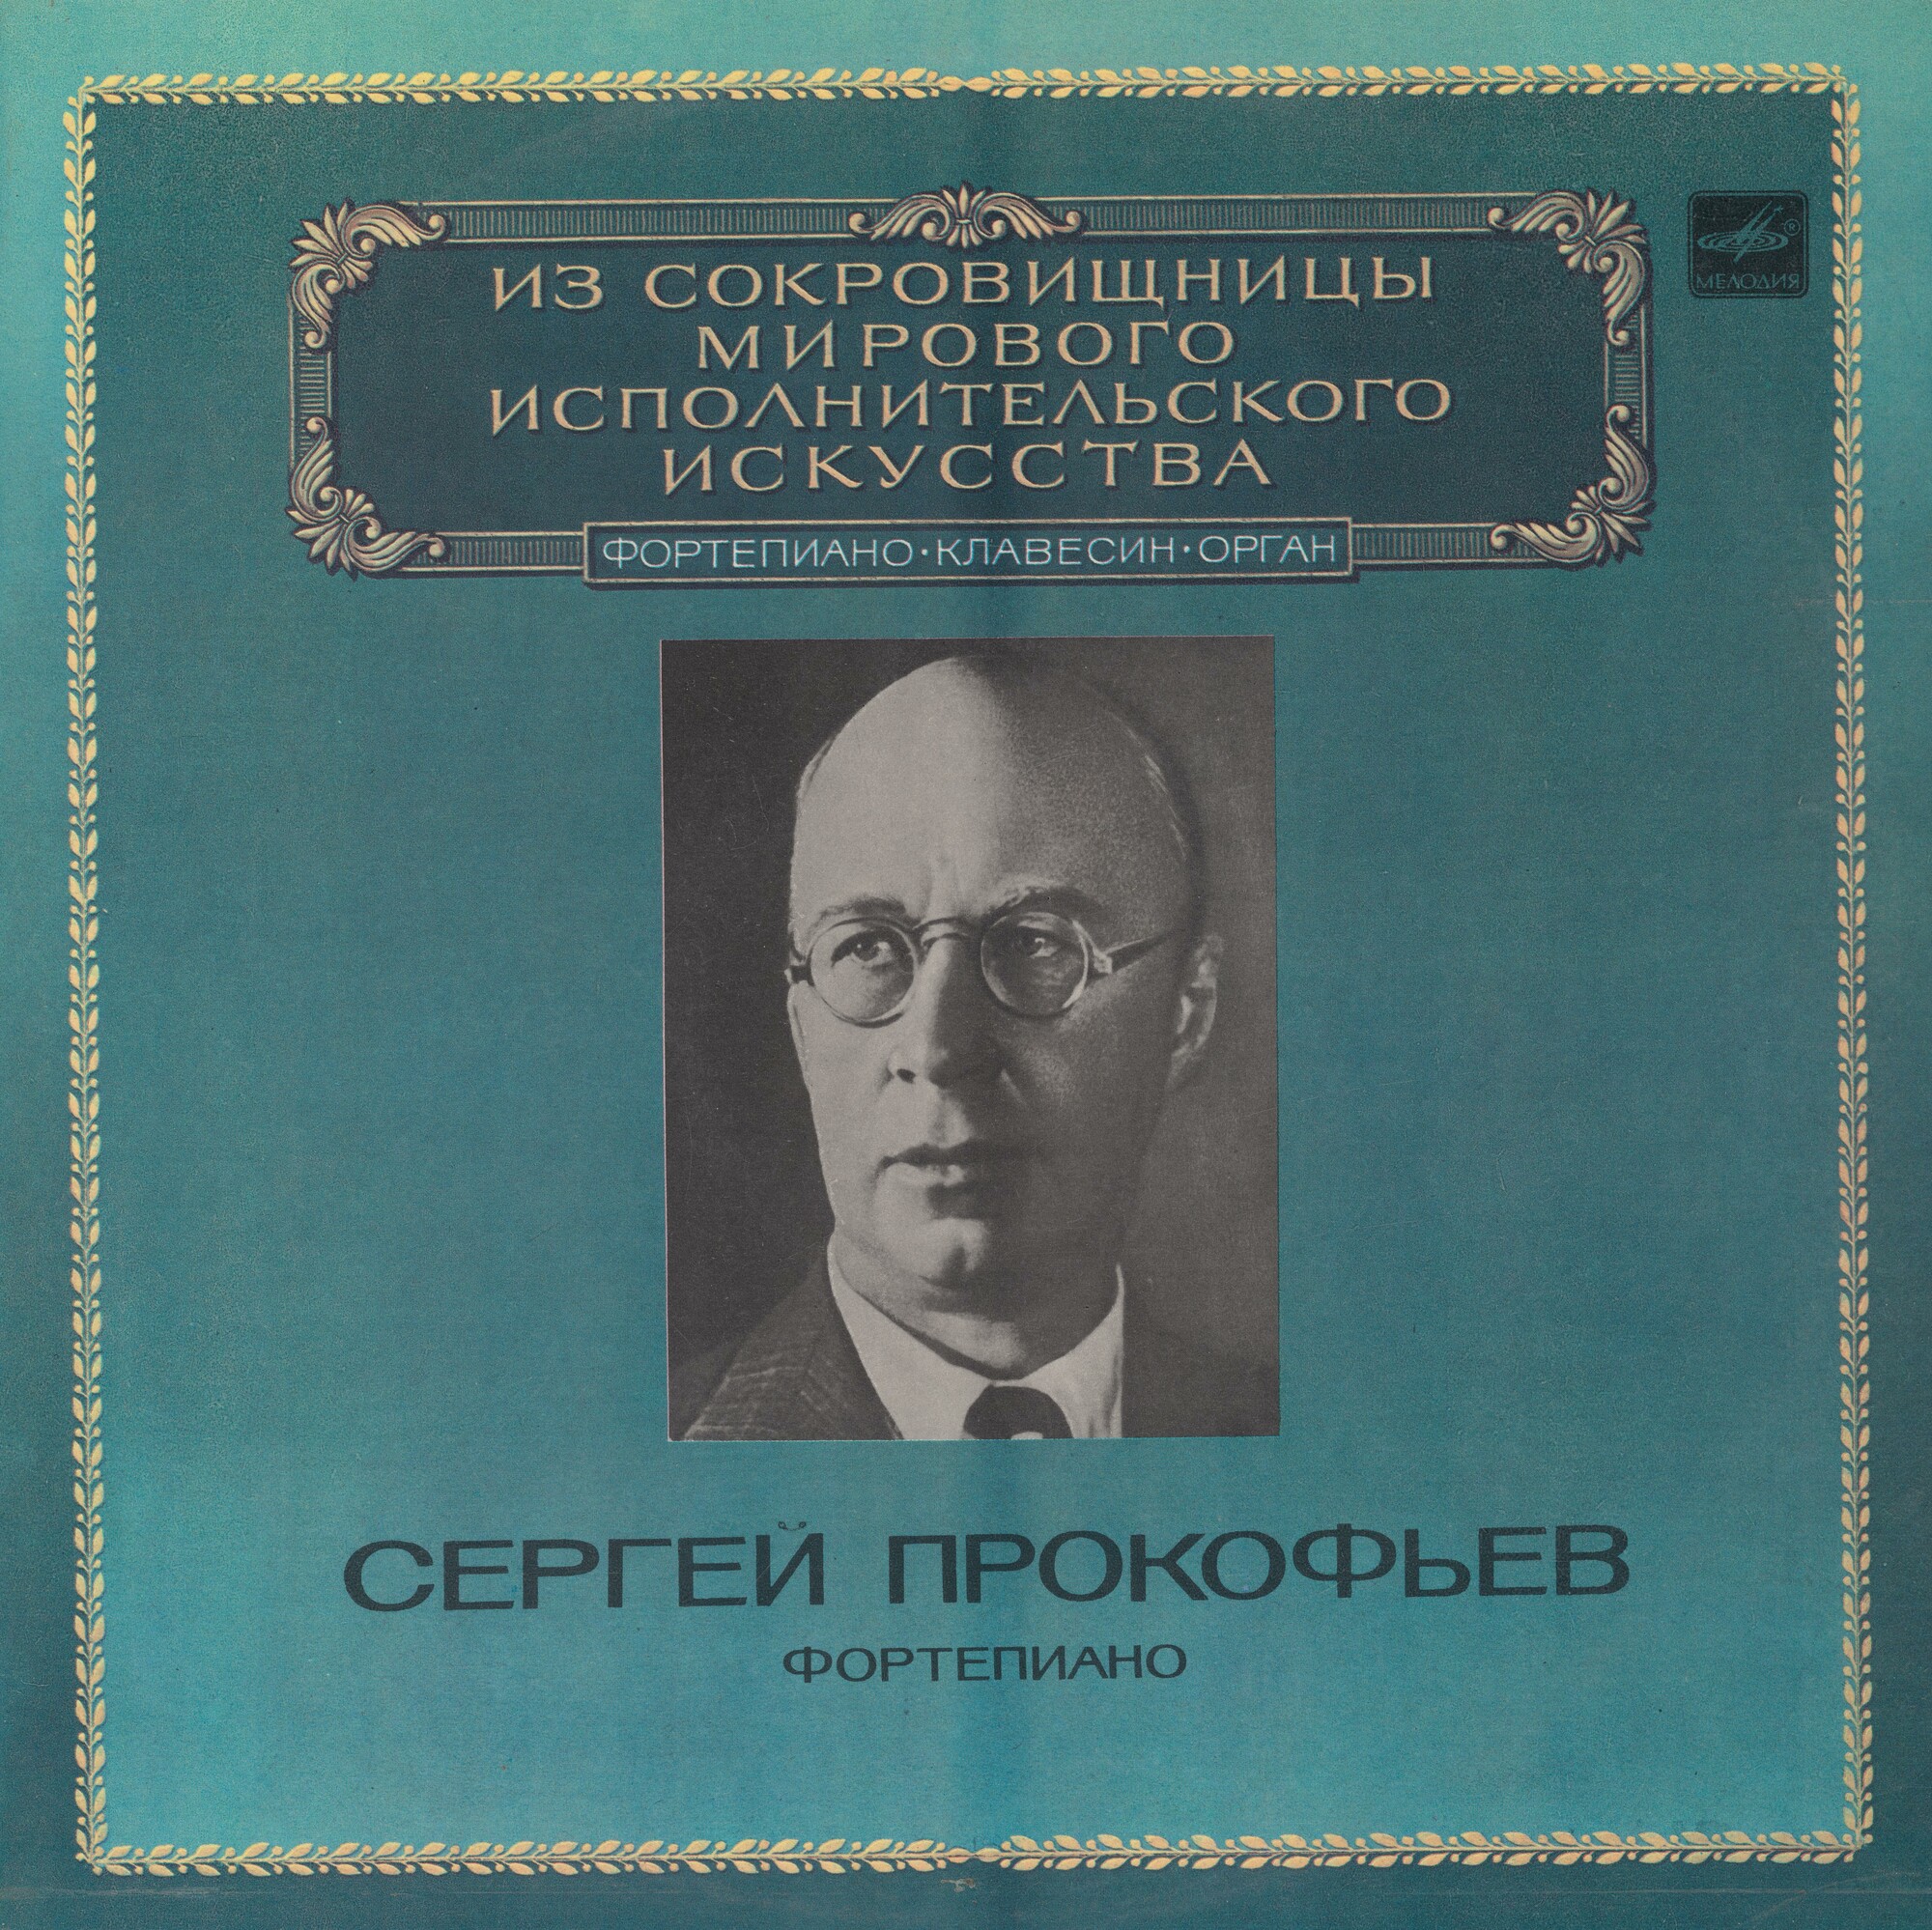 Сергей Прокофьев (ф-но)